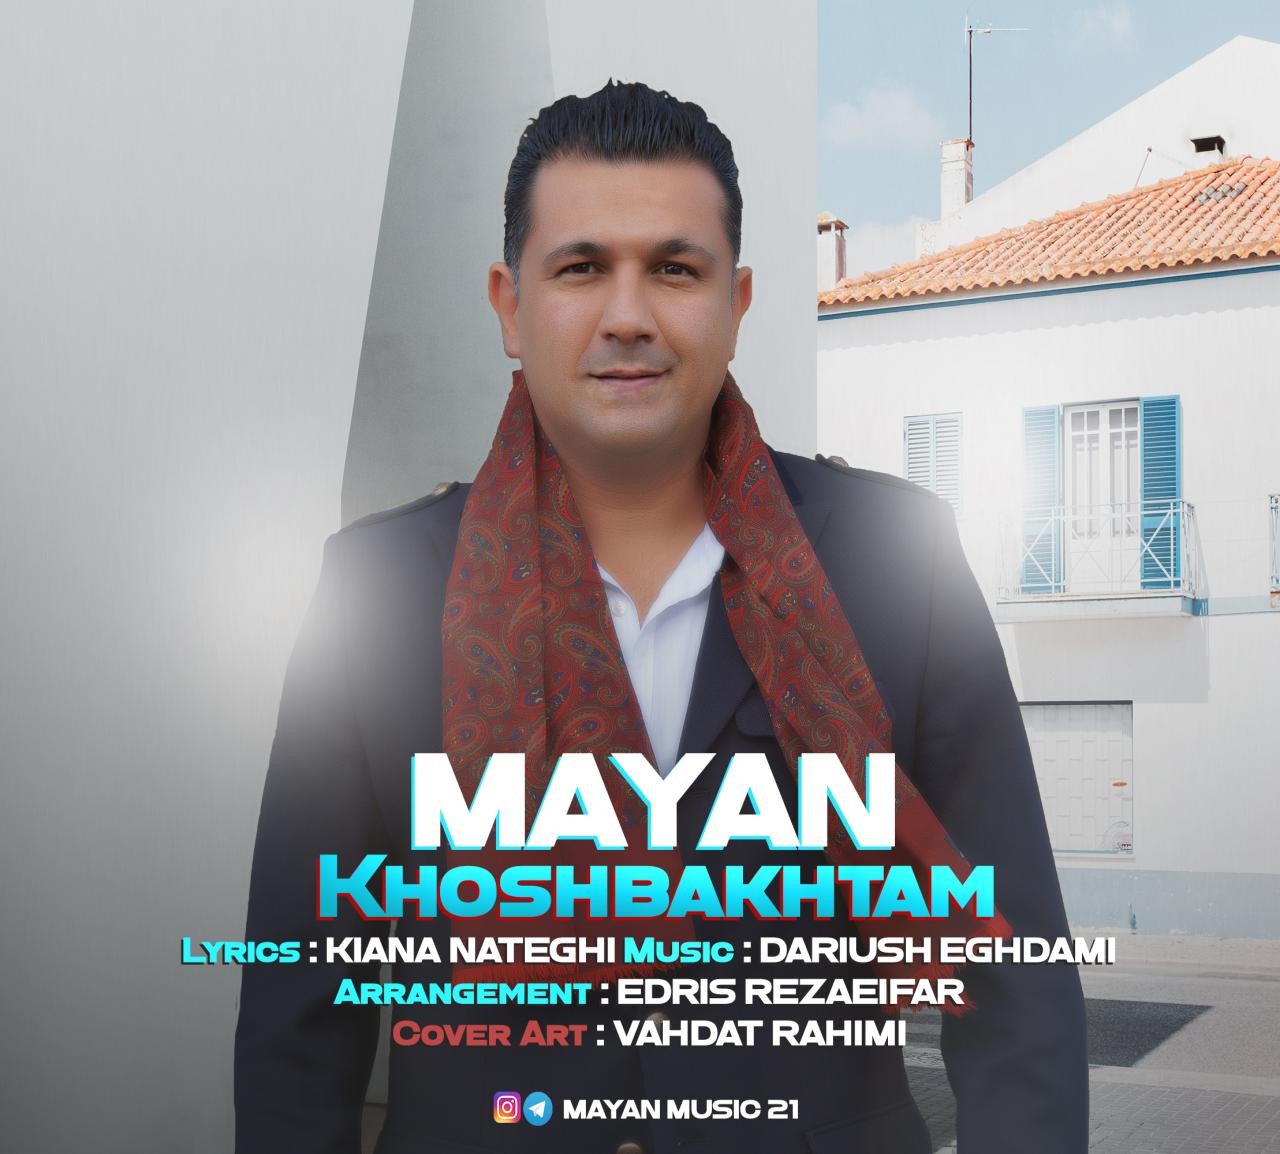  دانلود آهنگ جدید مایان - خوشبختم | Download New Music By Mayan - Khoshbakhtam